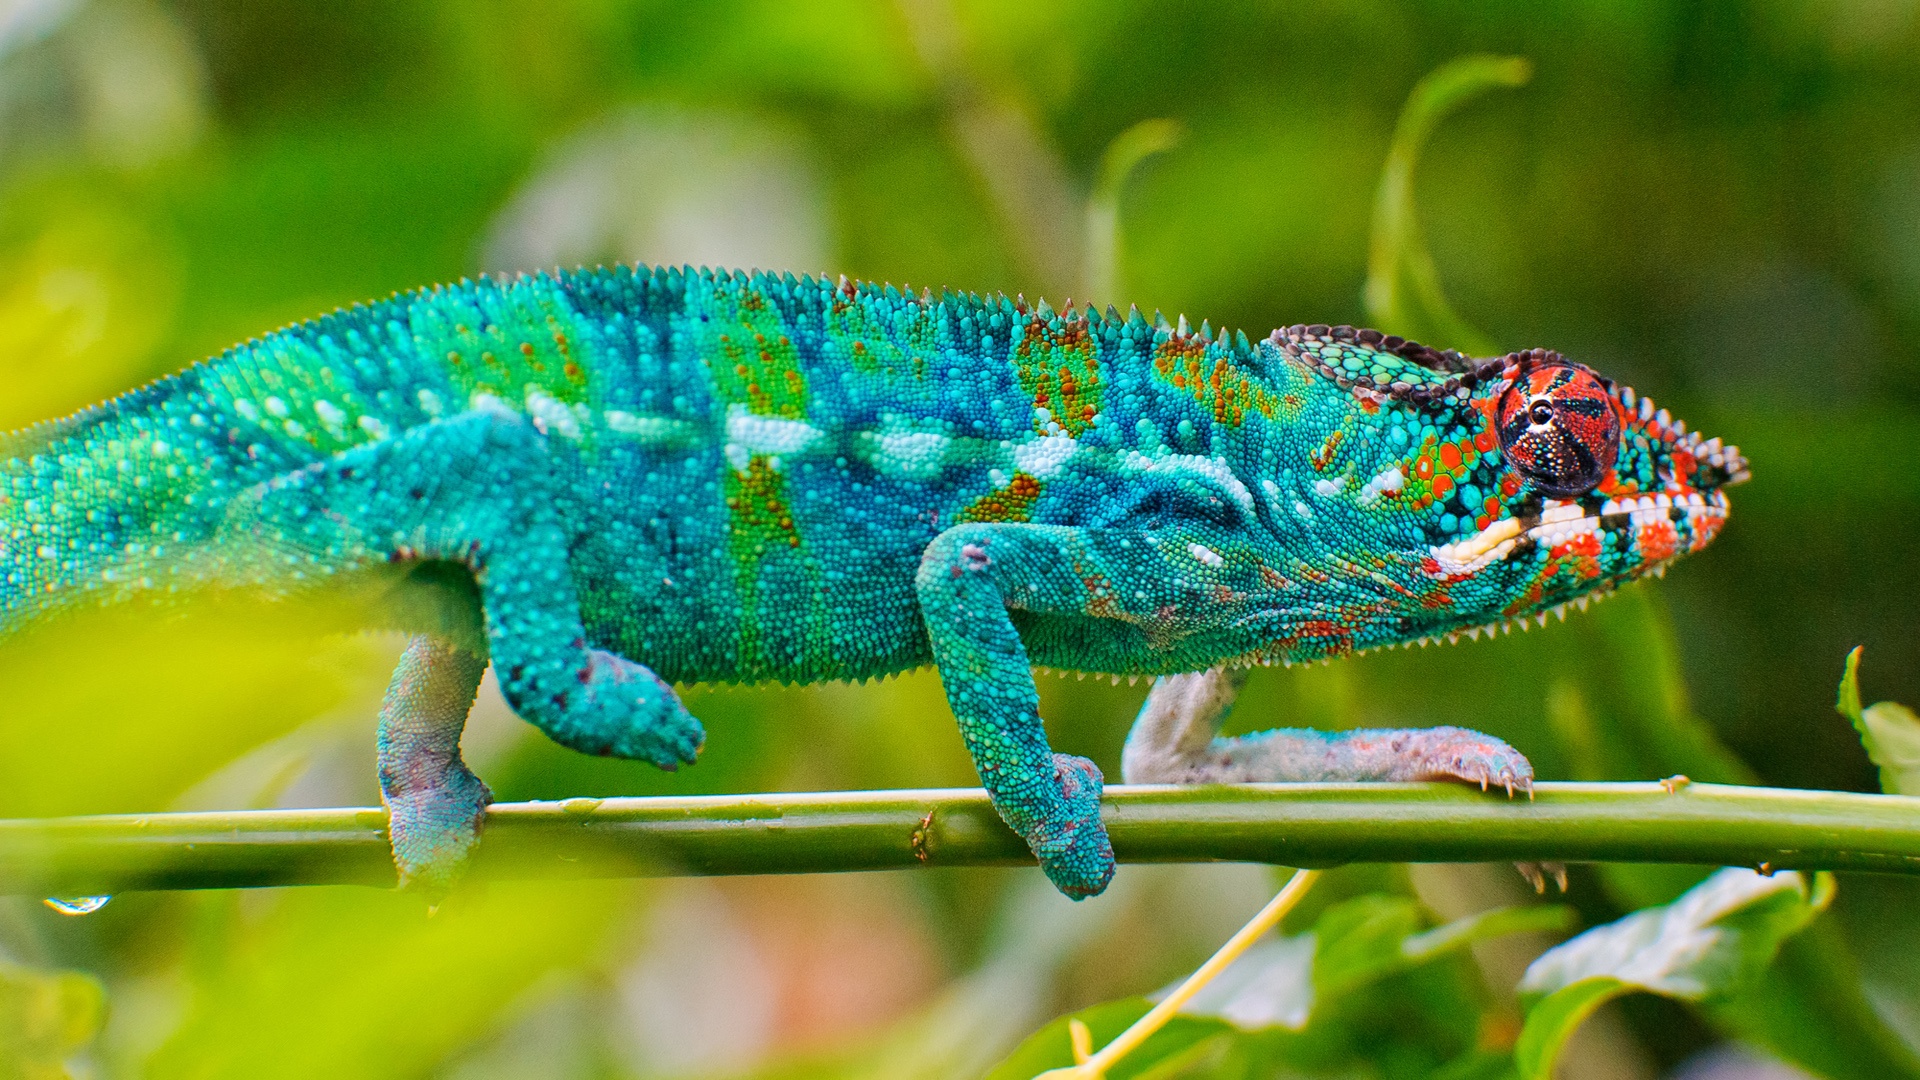 Blue Chameleon Lizard